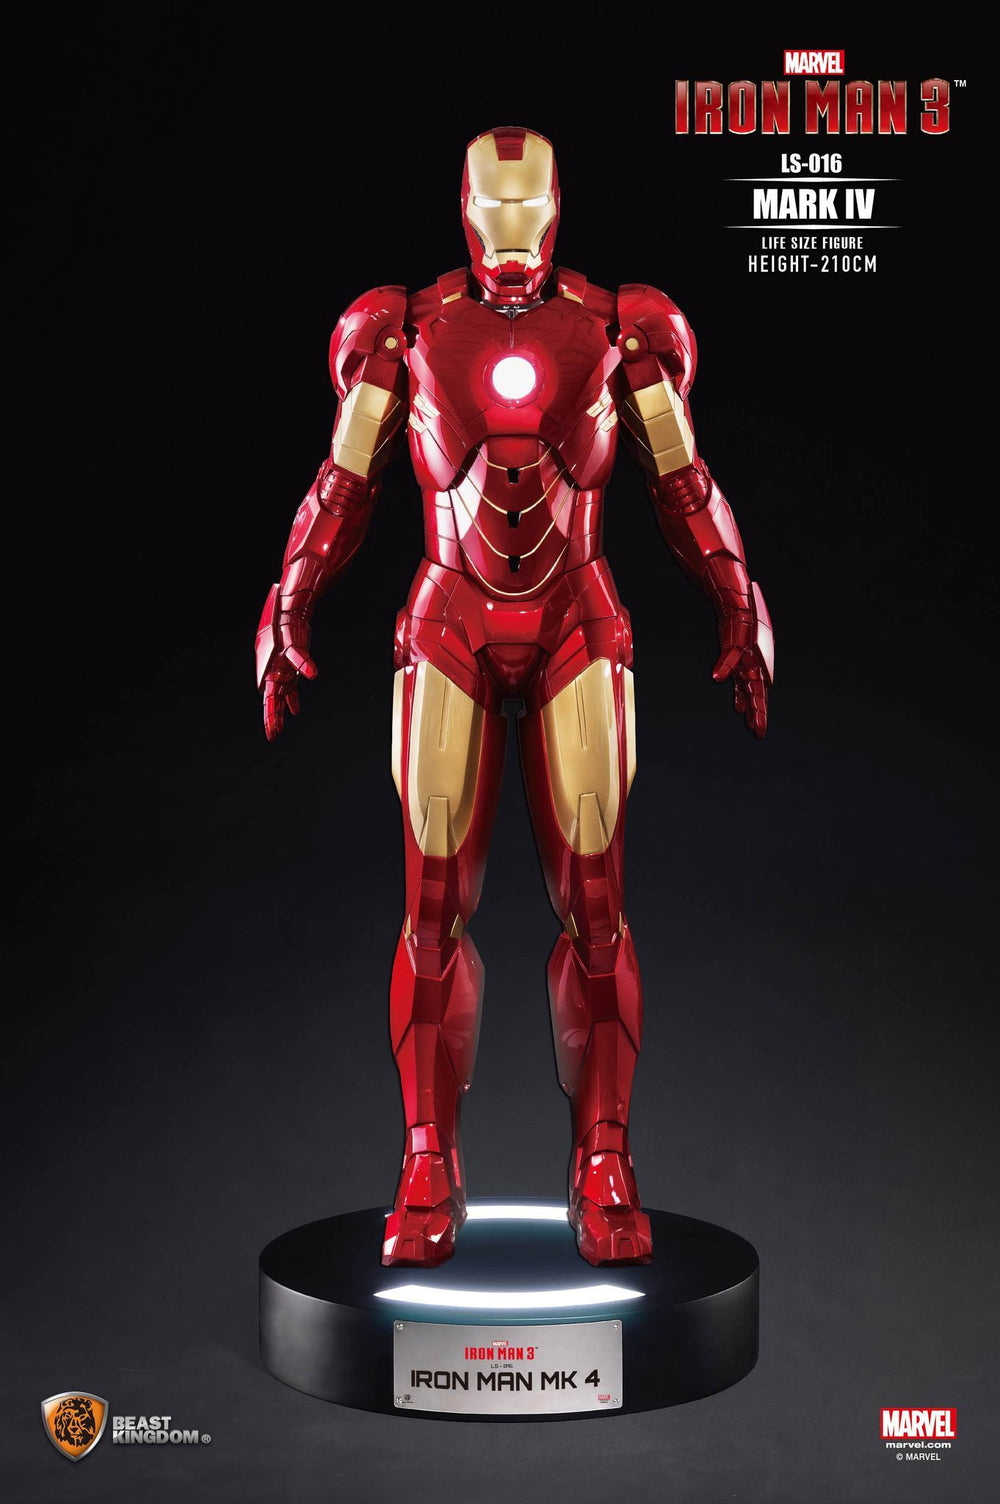 Beast Kingdom Life Size Marvel: Iron Man 3 - Mark IV Escala 1/1